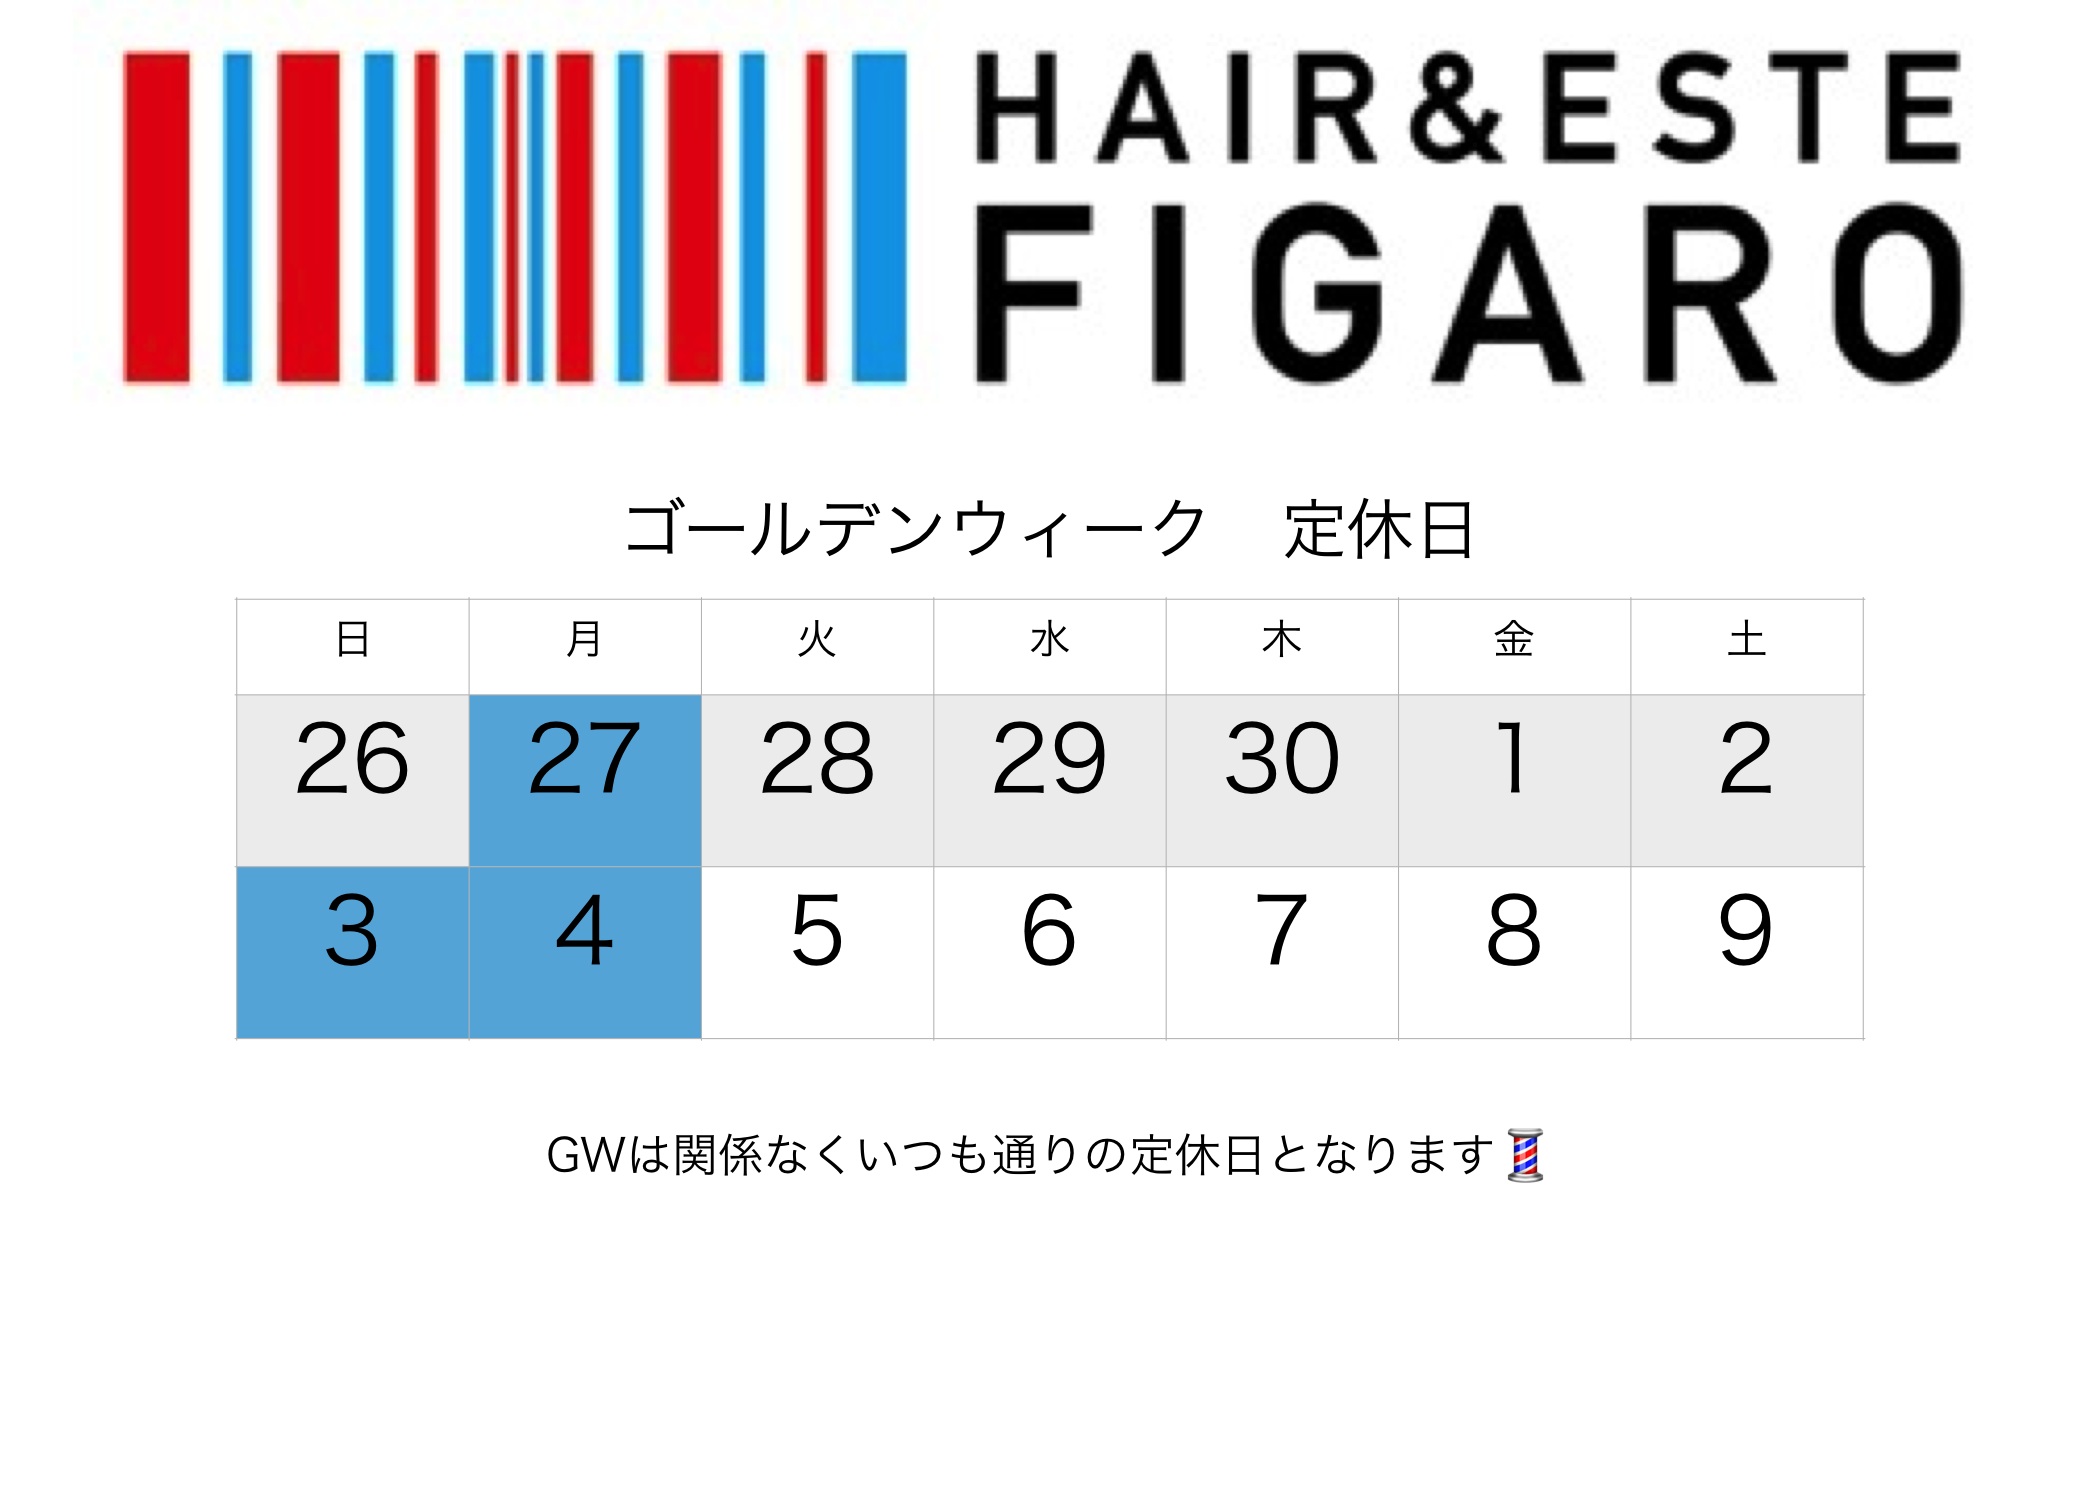 http://figaro-hair.com/blog/GW.jpg